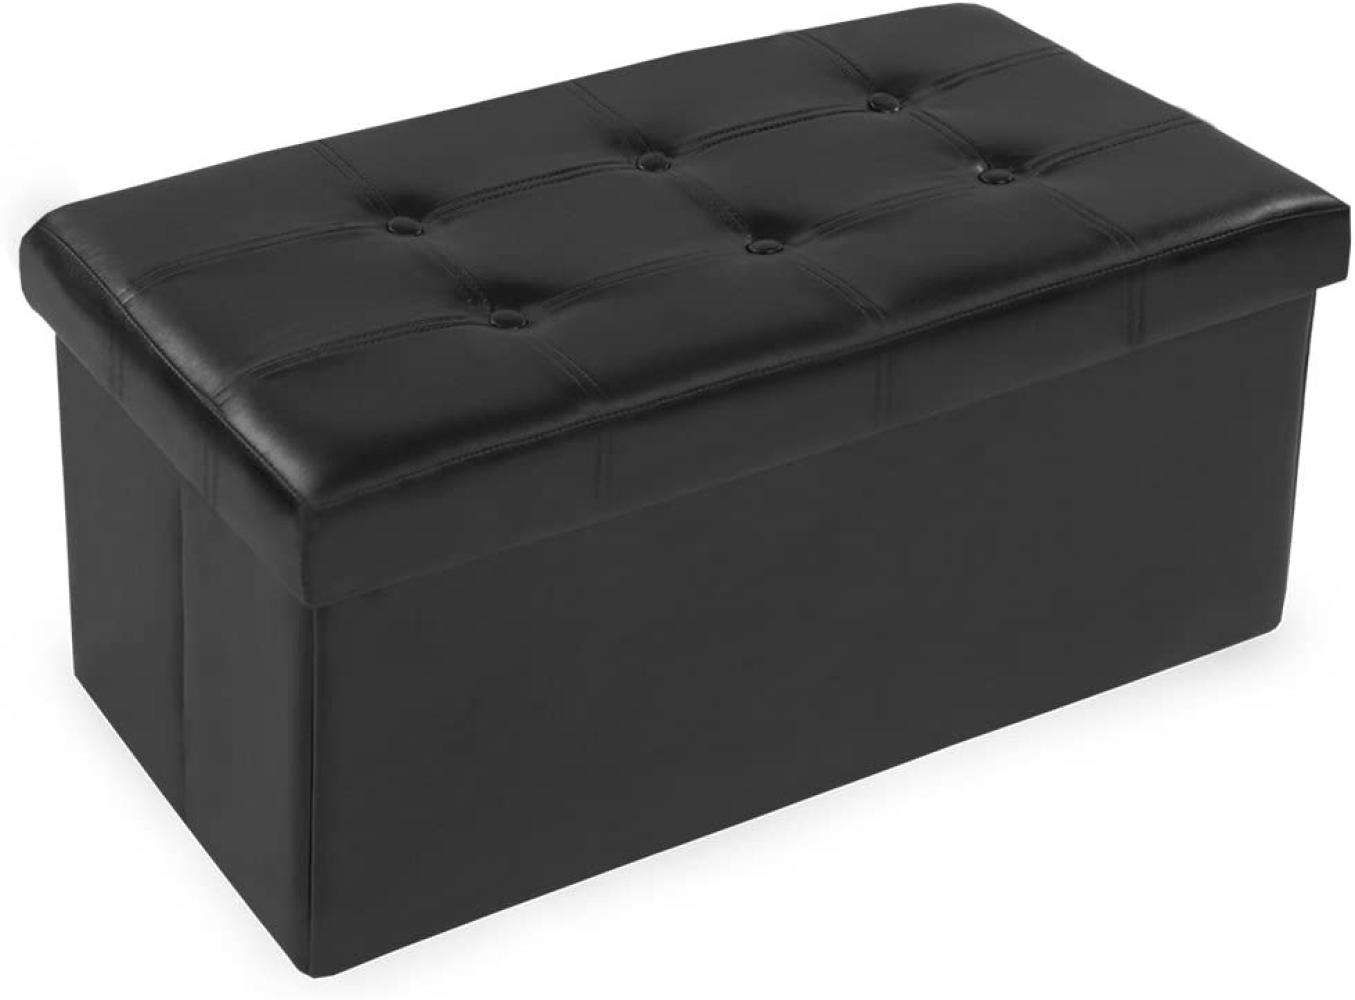 Faltbarer Sitzhocker aus Kunstleder mit Stauraum - schwarz Bild 1